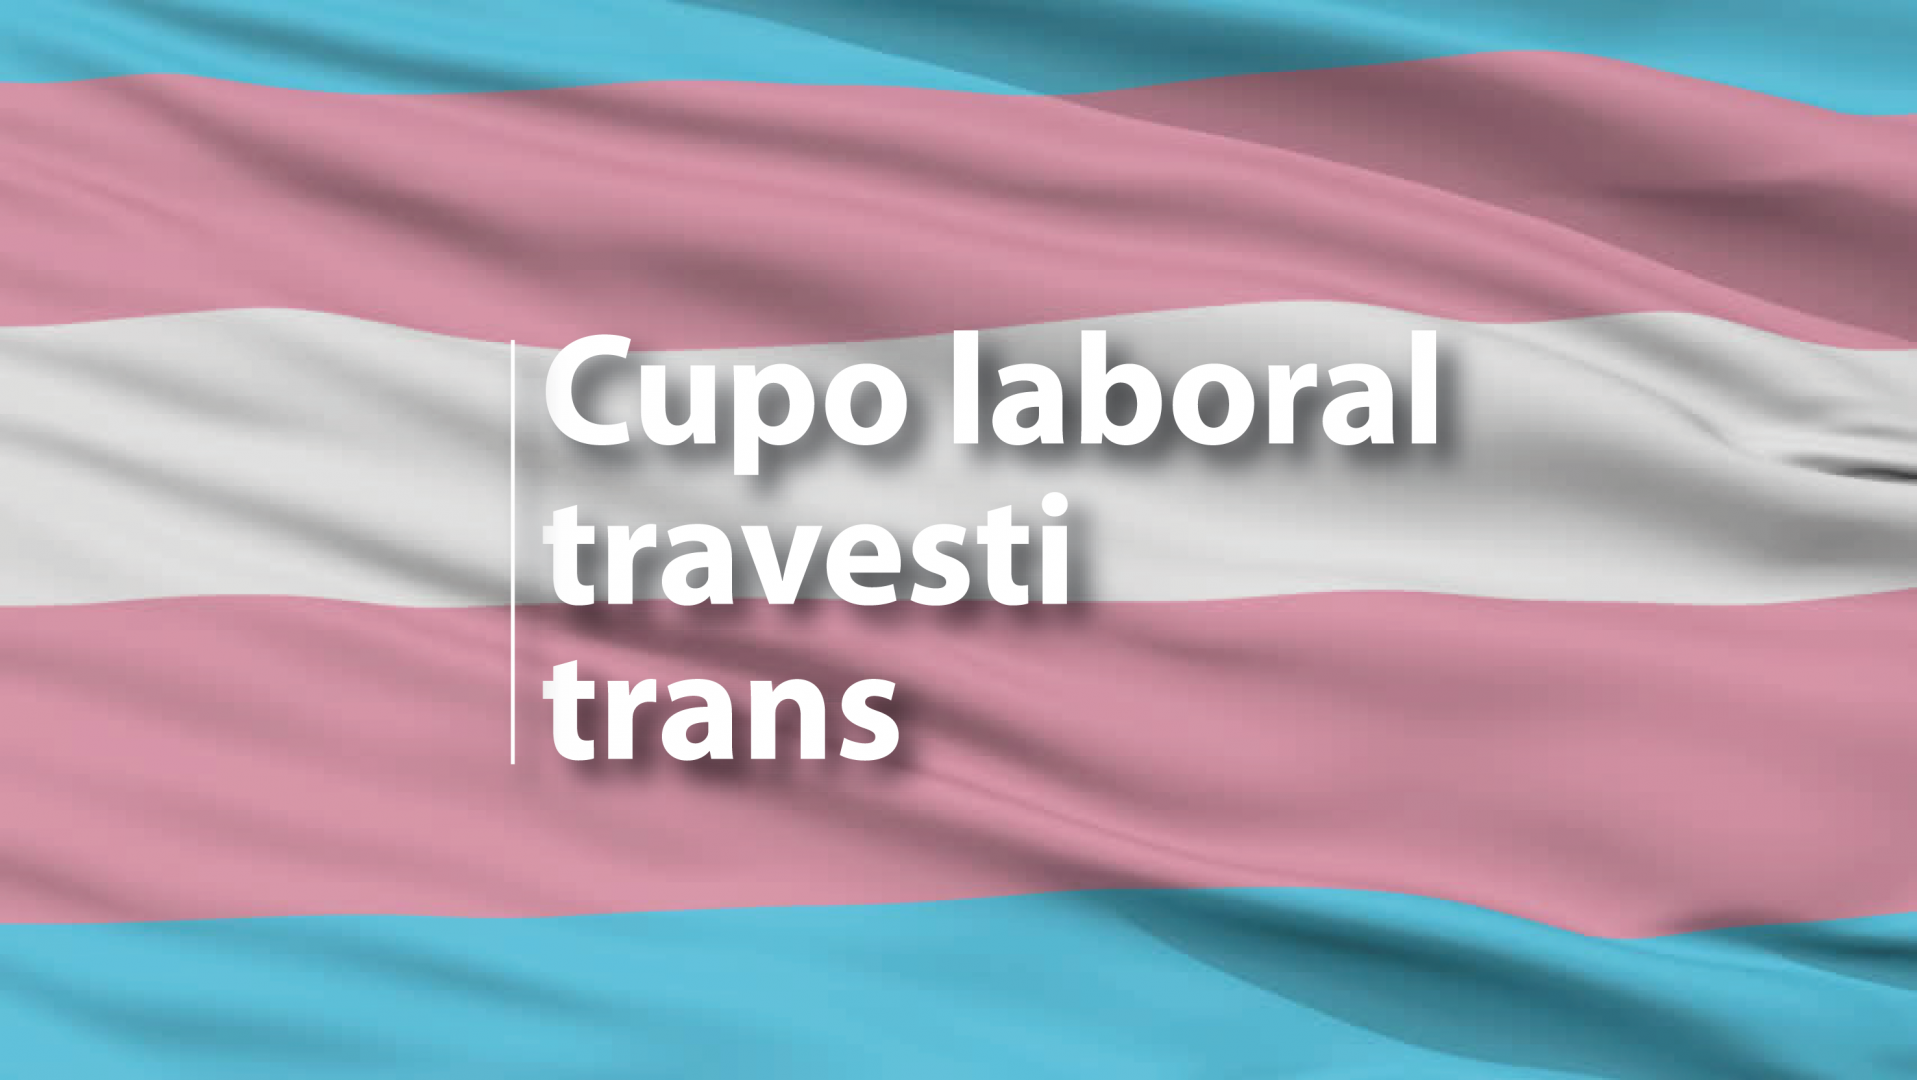 El Senado convirtió en ley el cupo laboral travesti trans